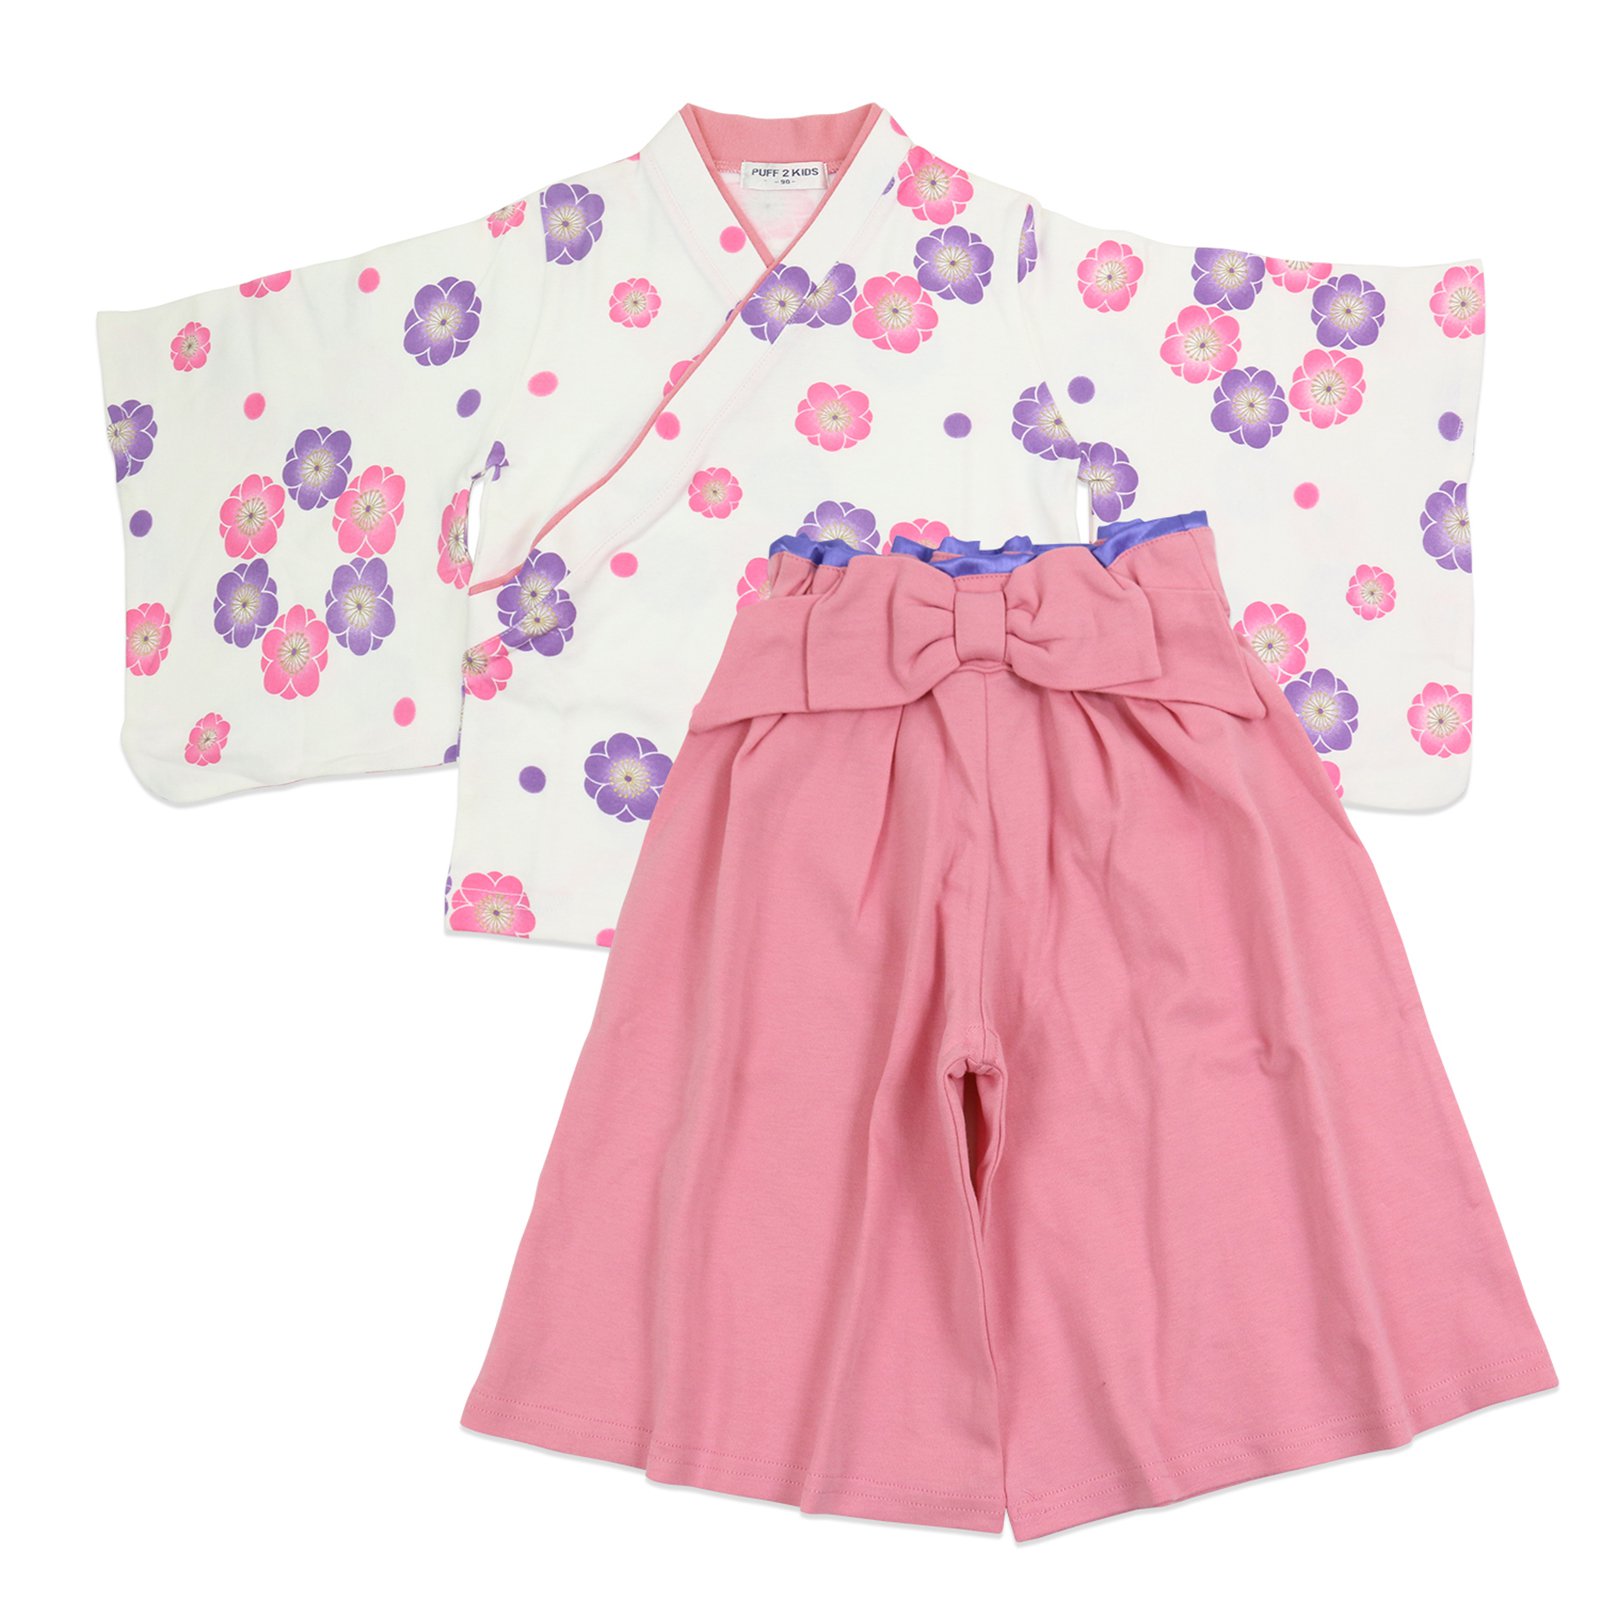 袴 袴風 女の子 子供用 キッズ 2点 セット ひなまつり 和服 衣装 着物